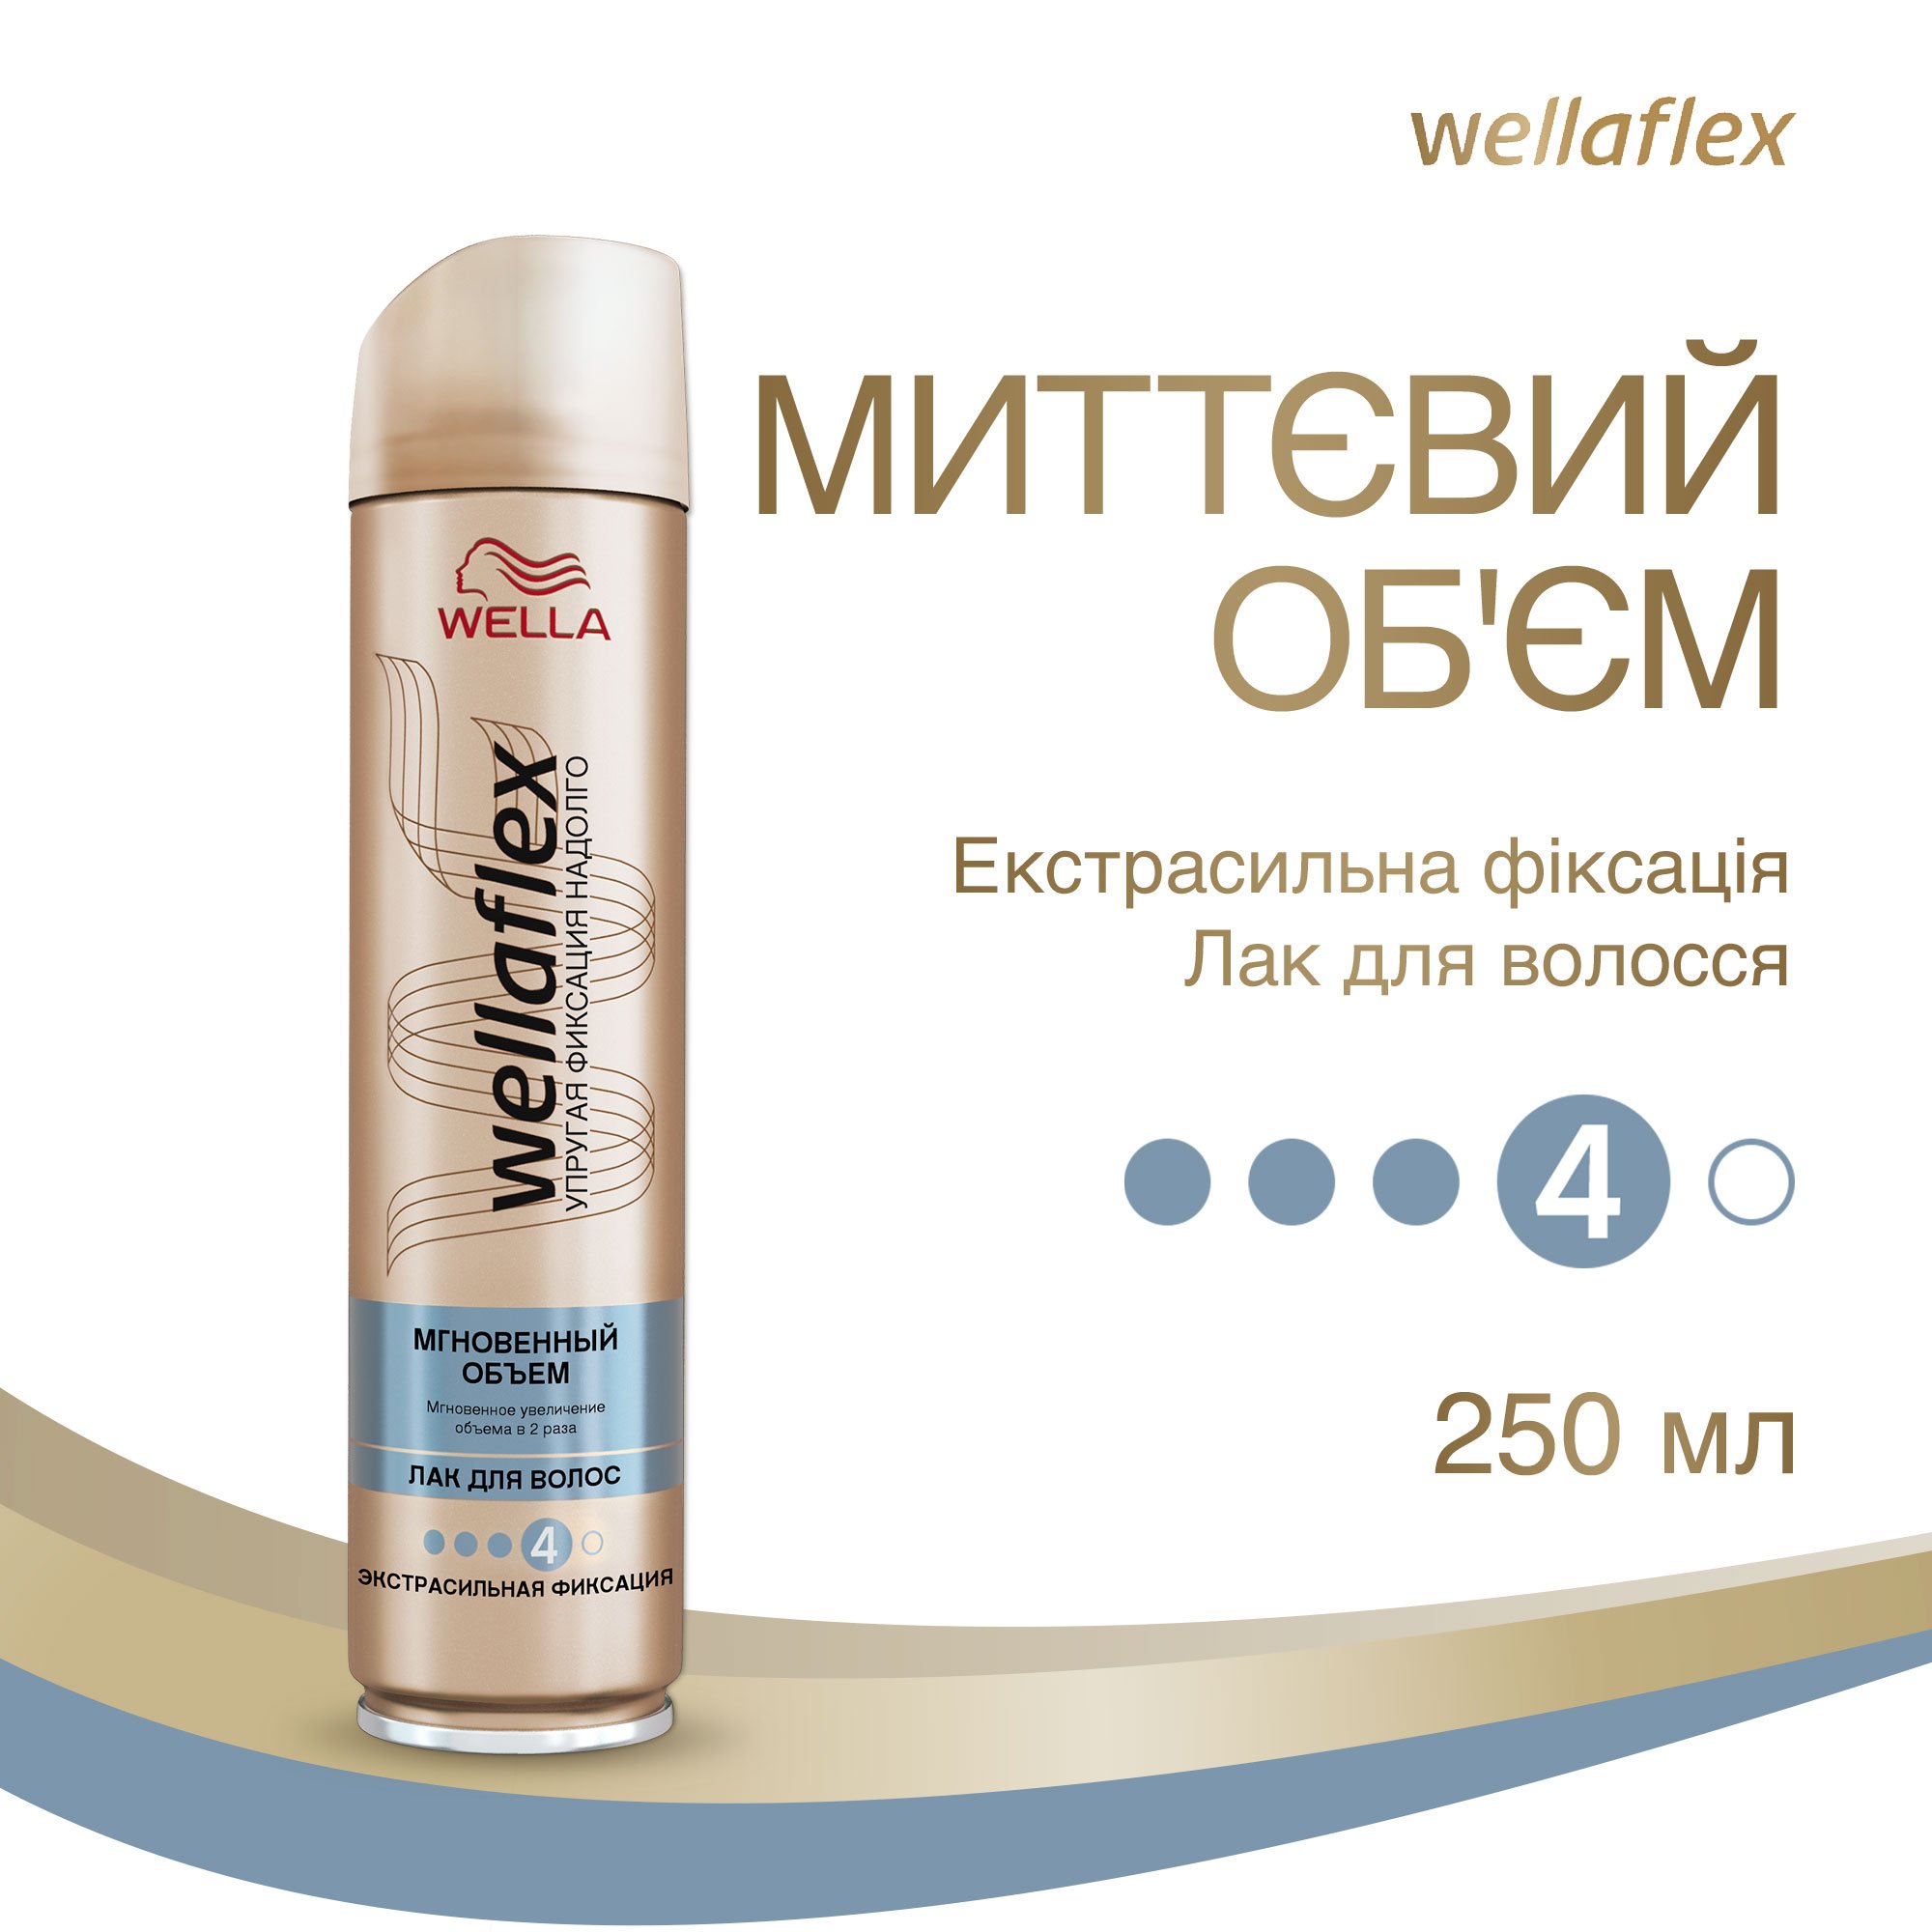 Лак для волосся Wellaflex Миттєвий об'єм Екстрасильної фіксації, 250 мл - фото 2